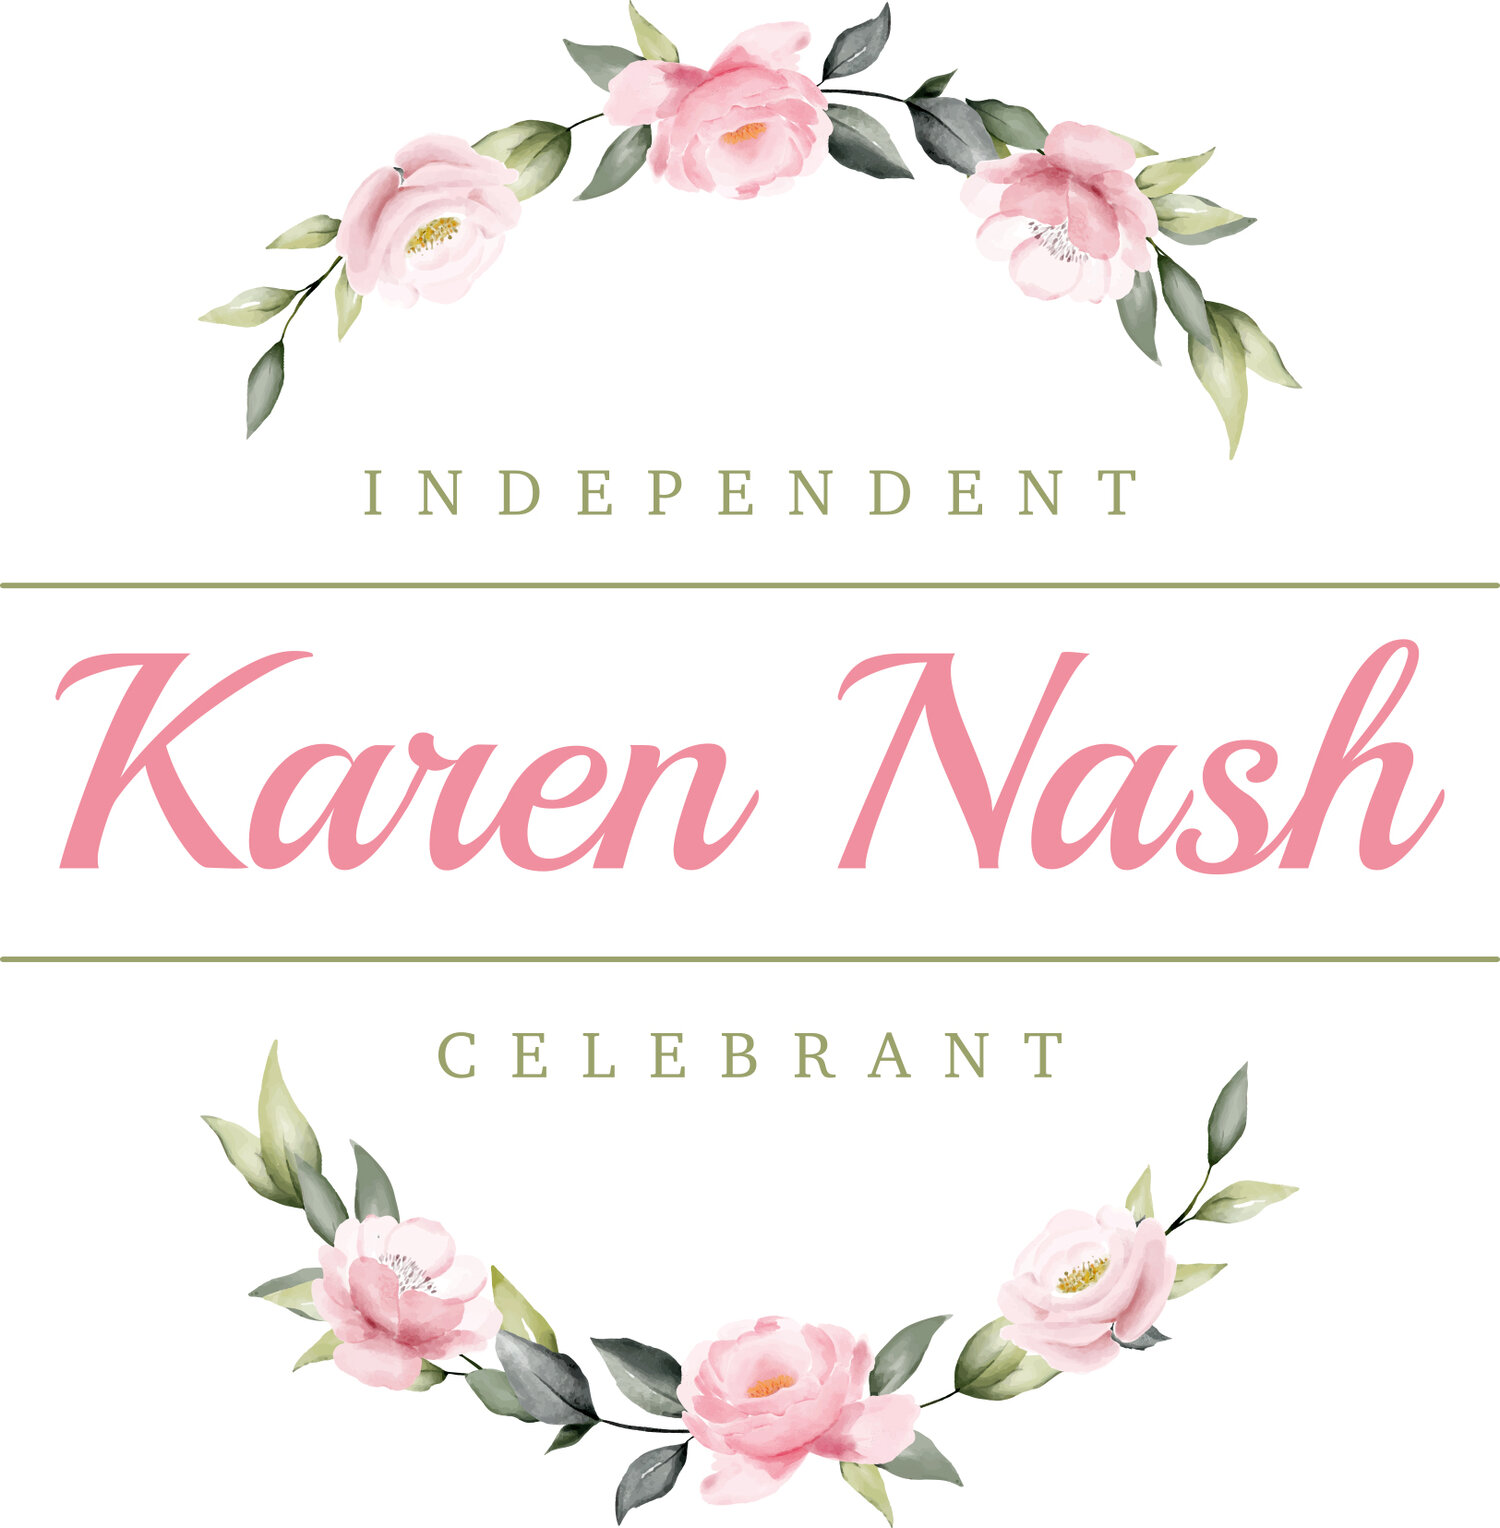 Karen Nash Celebrant